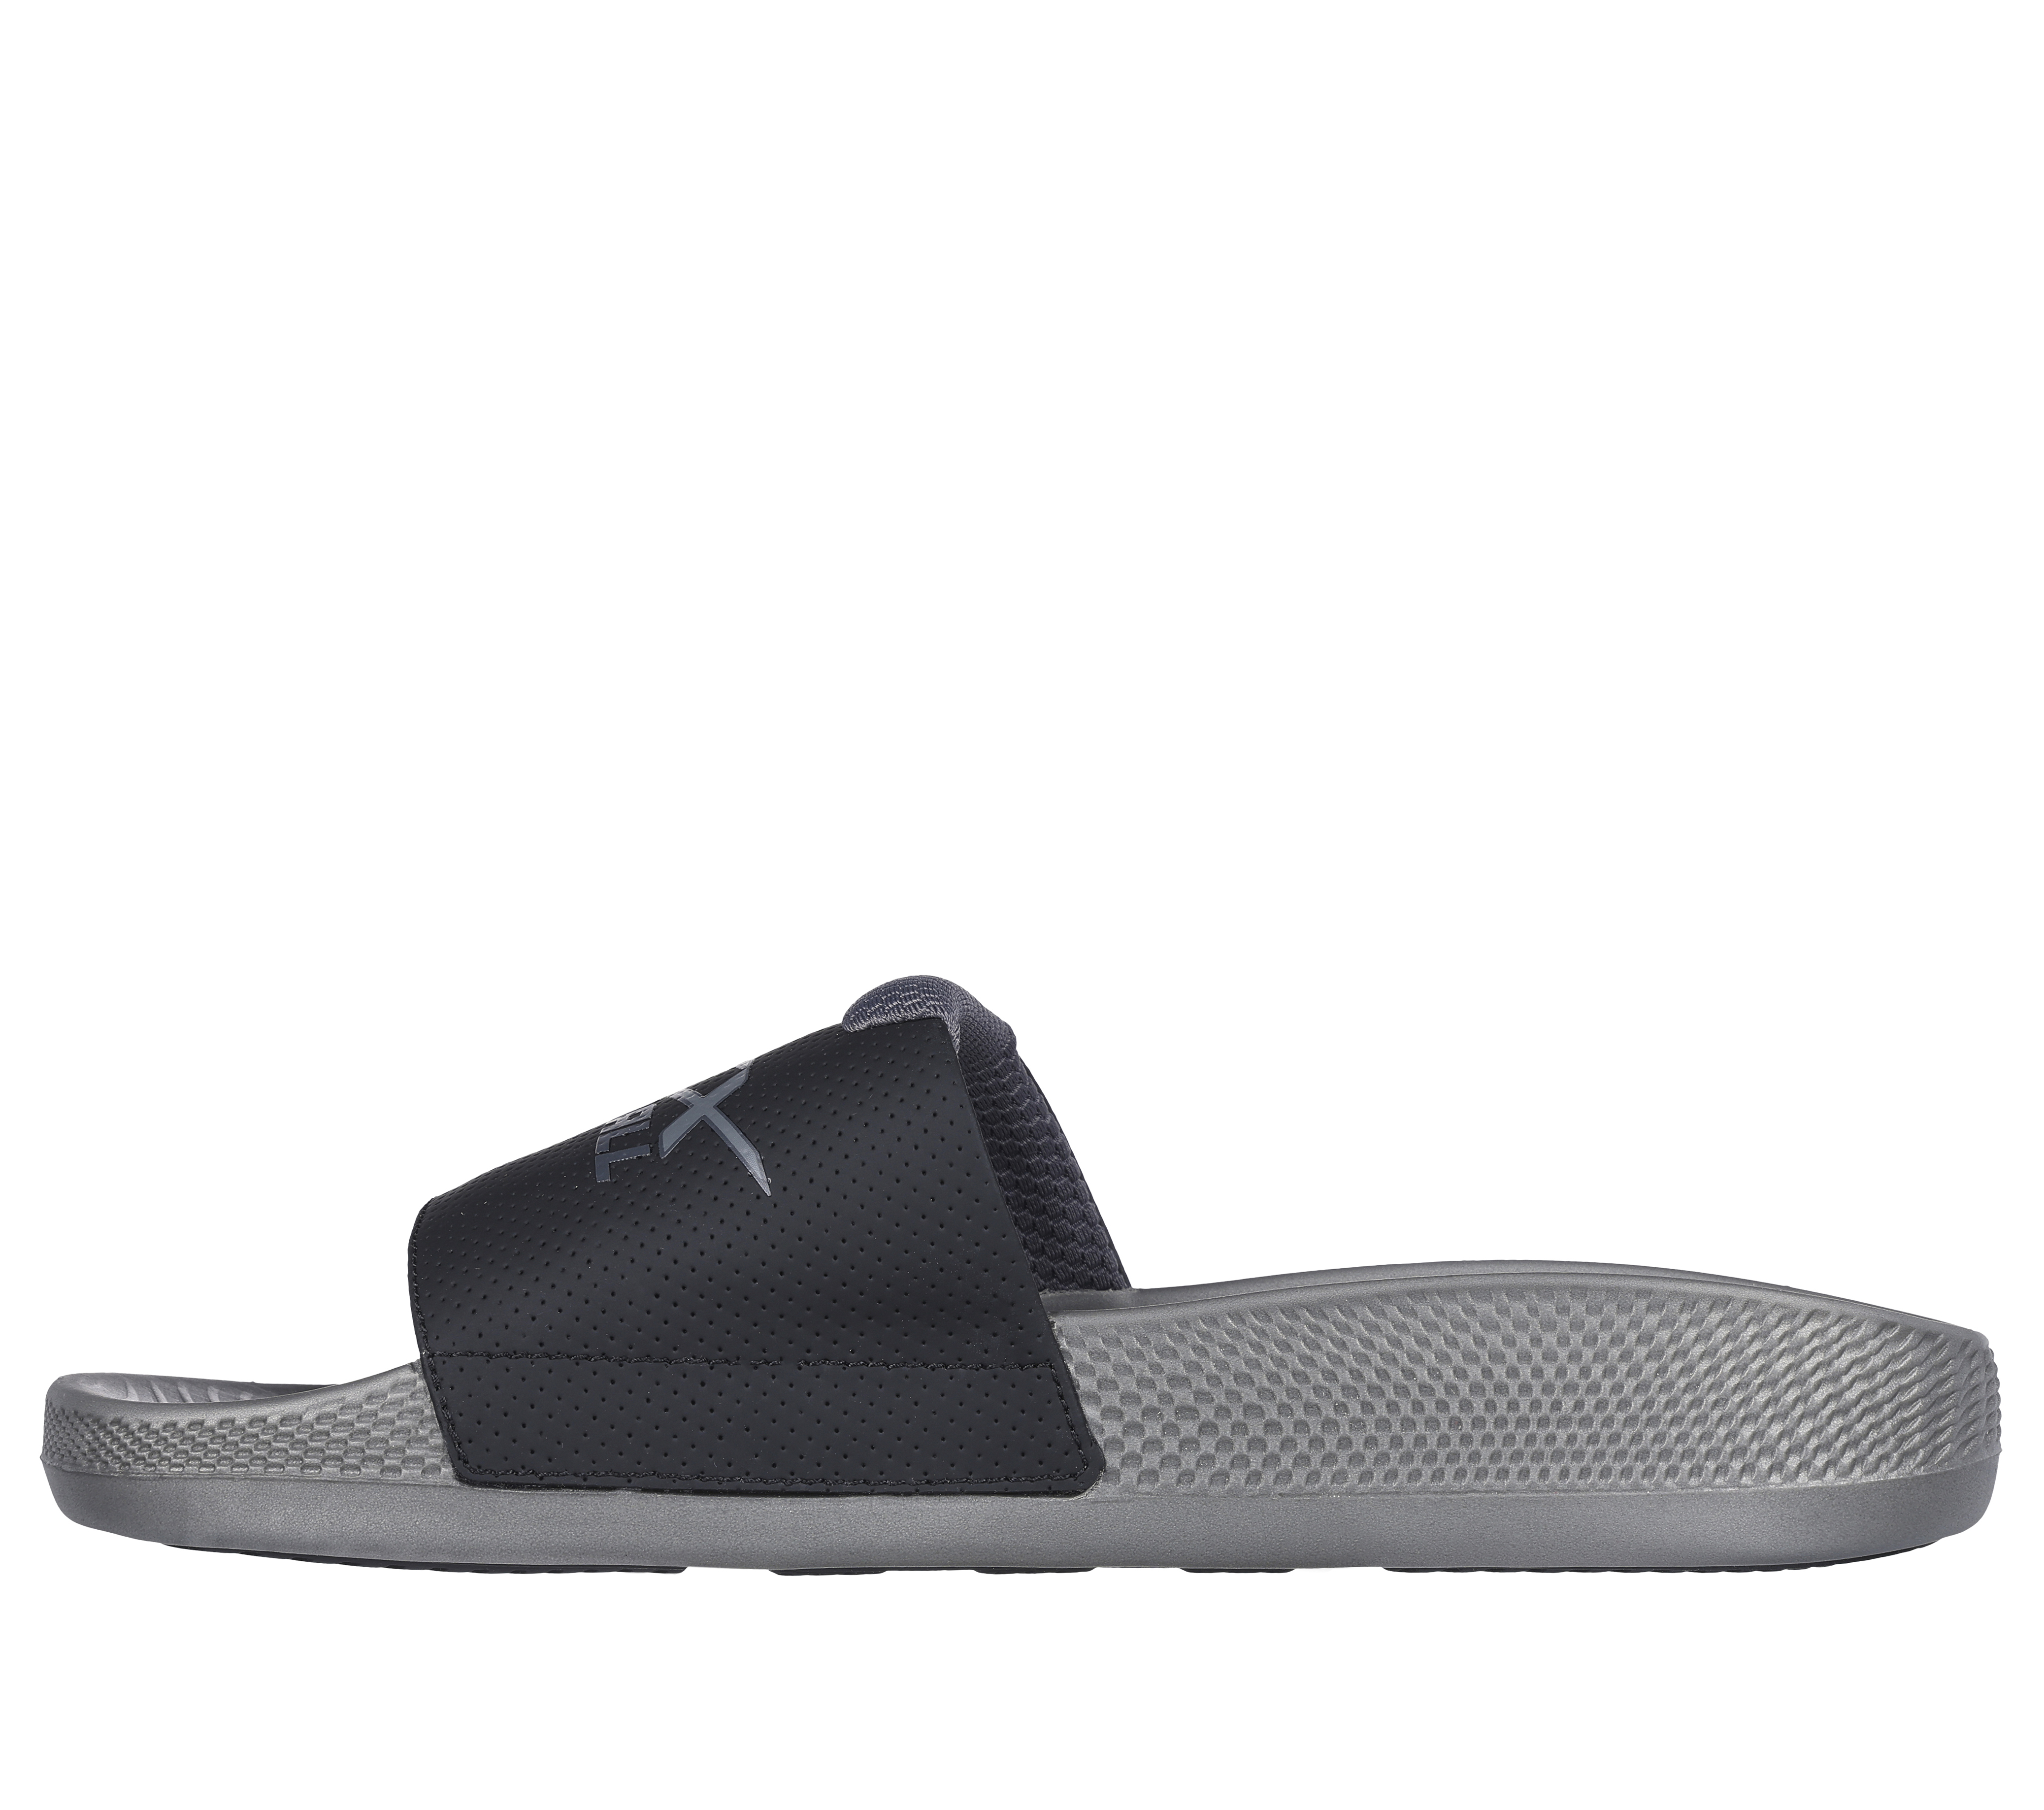  Skechers womens Hyper Slide - Post Exercise - Performance  Recovery Slide Sandal​,Black/White,5 M US